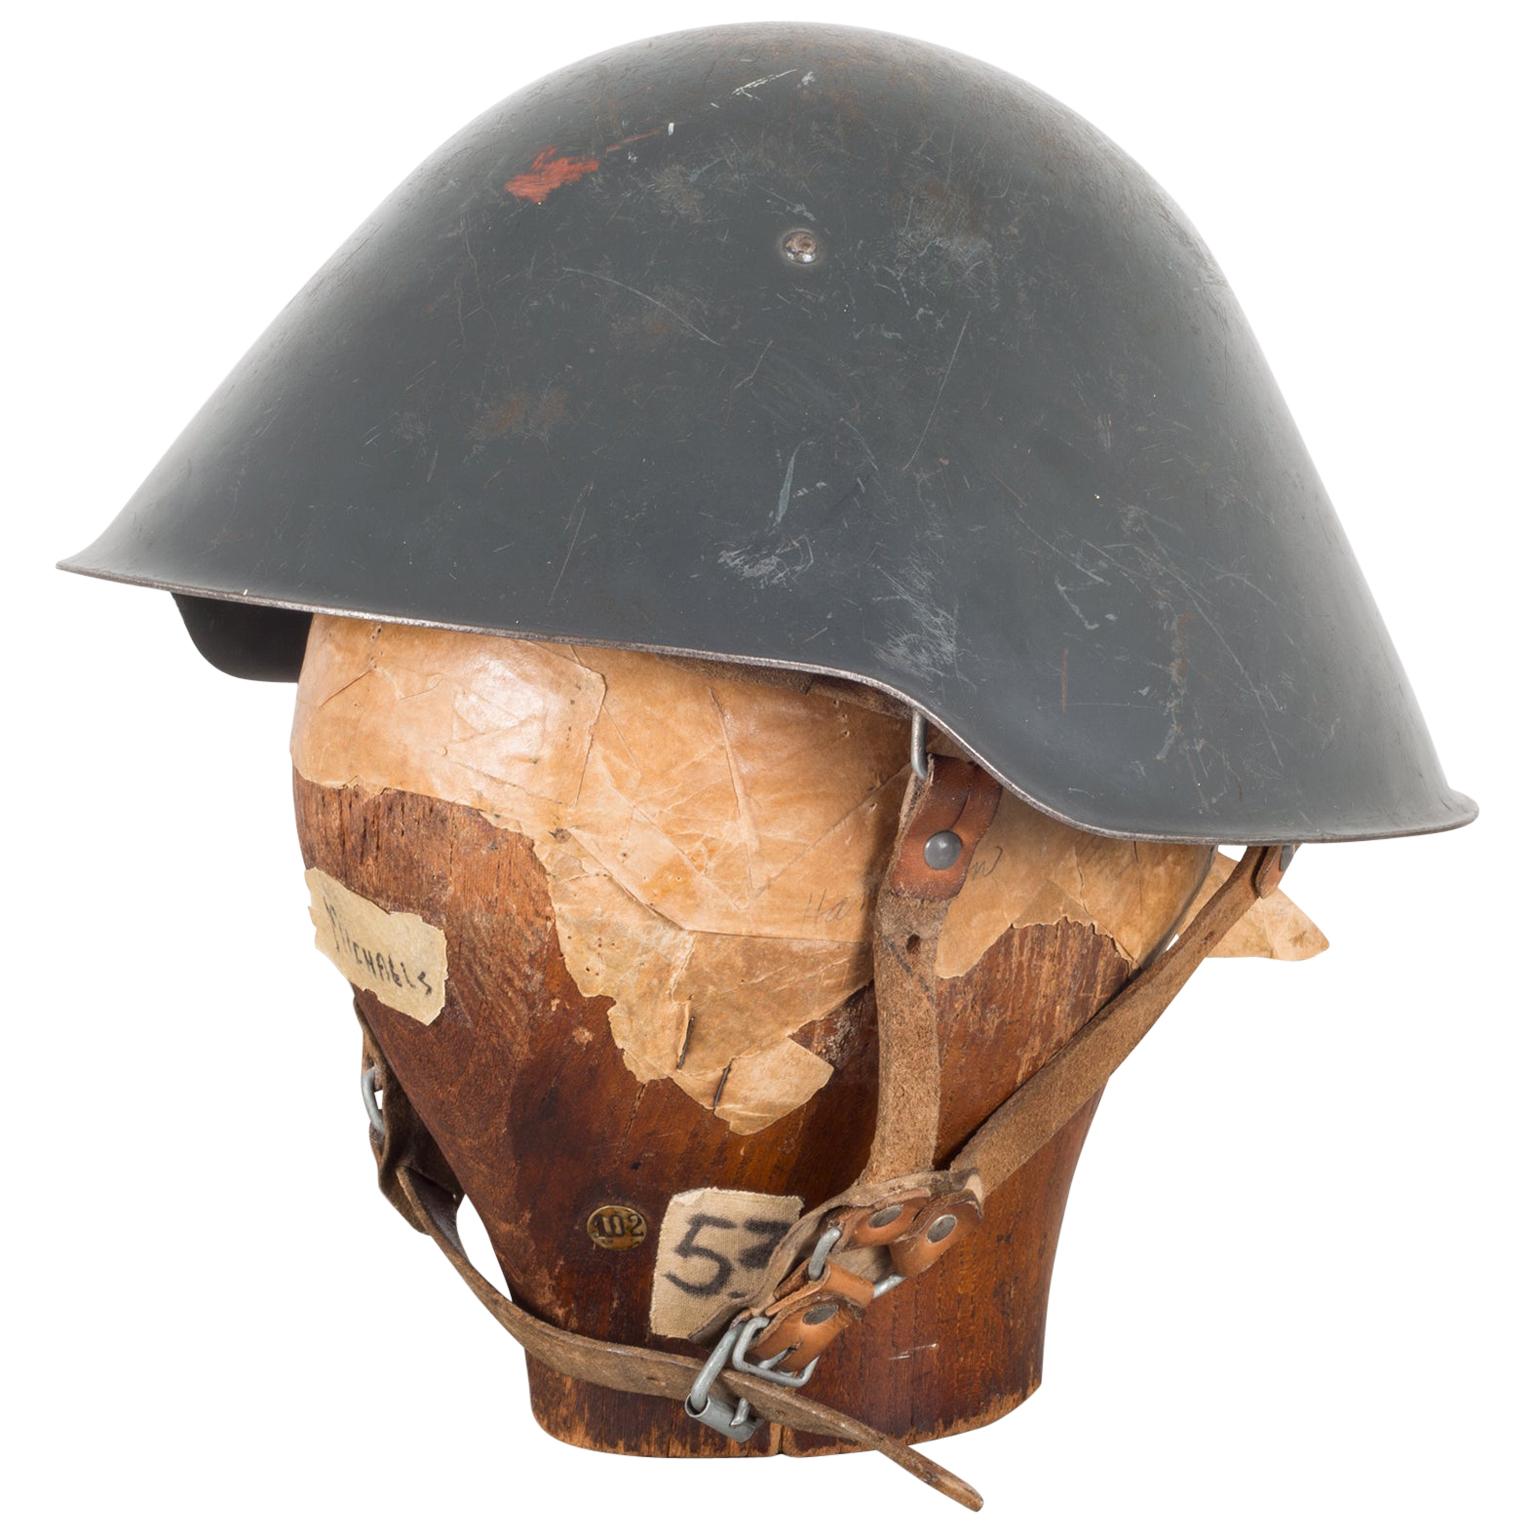 East German Army Helmet, circa 1940-1950